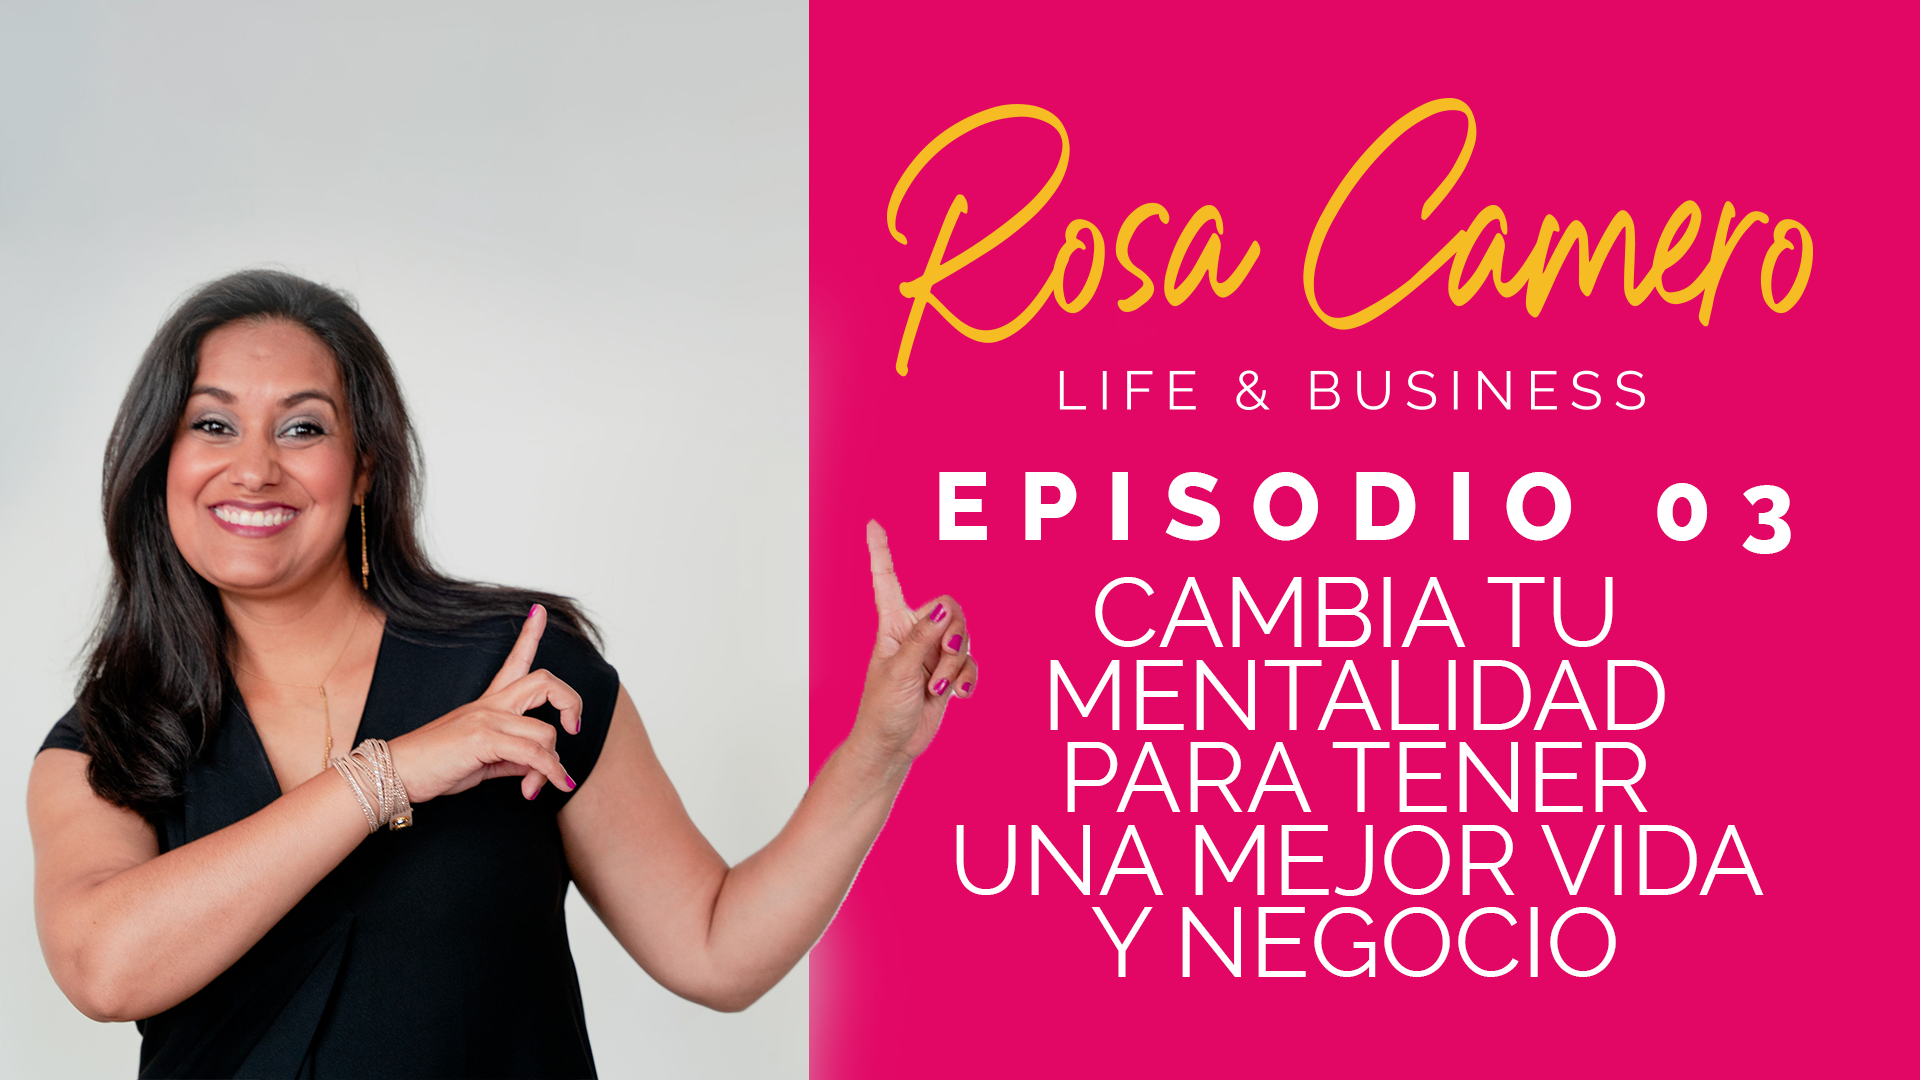 En este momento estás viendo Life & Busines con Rosa Camero Episodio 03: Cambia Tu Mentalidad Para Tener Una Mejor Vida Y Negocio